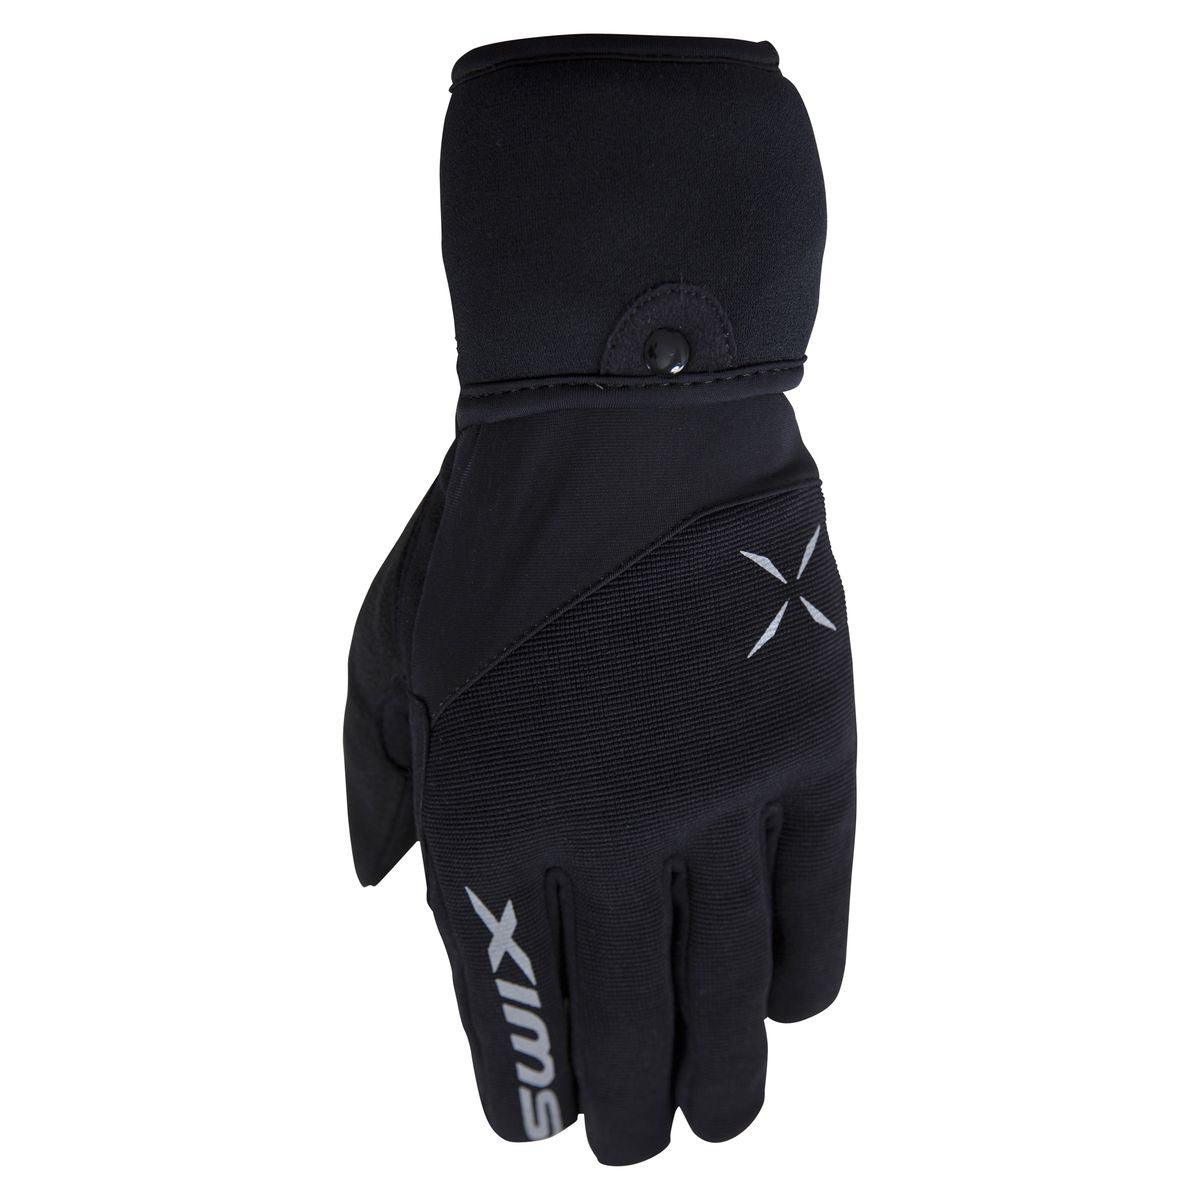 Atlasx - Women's Glove Mitt